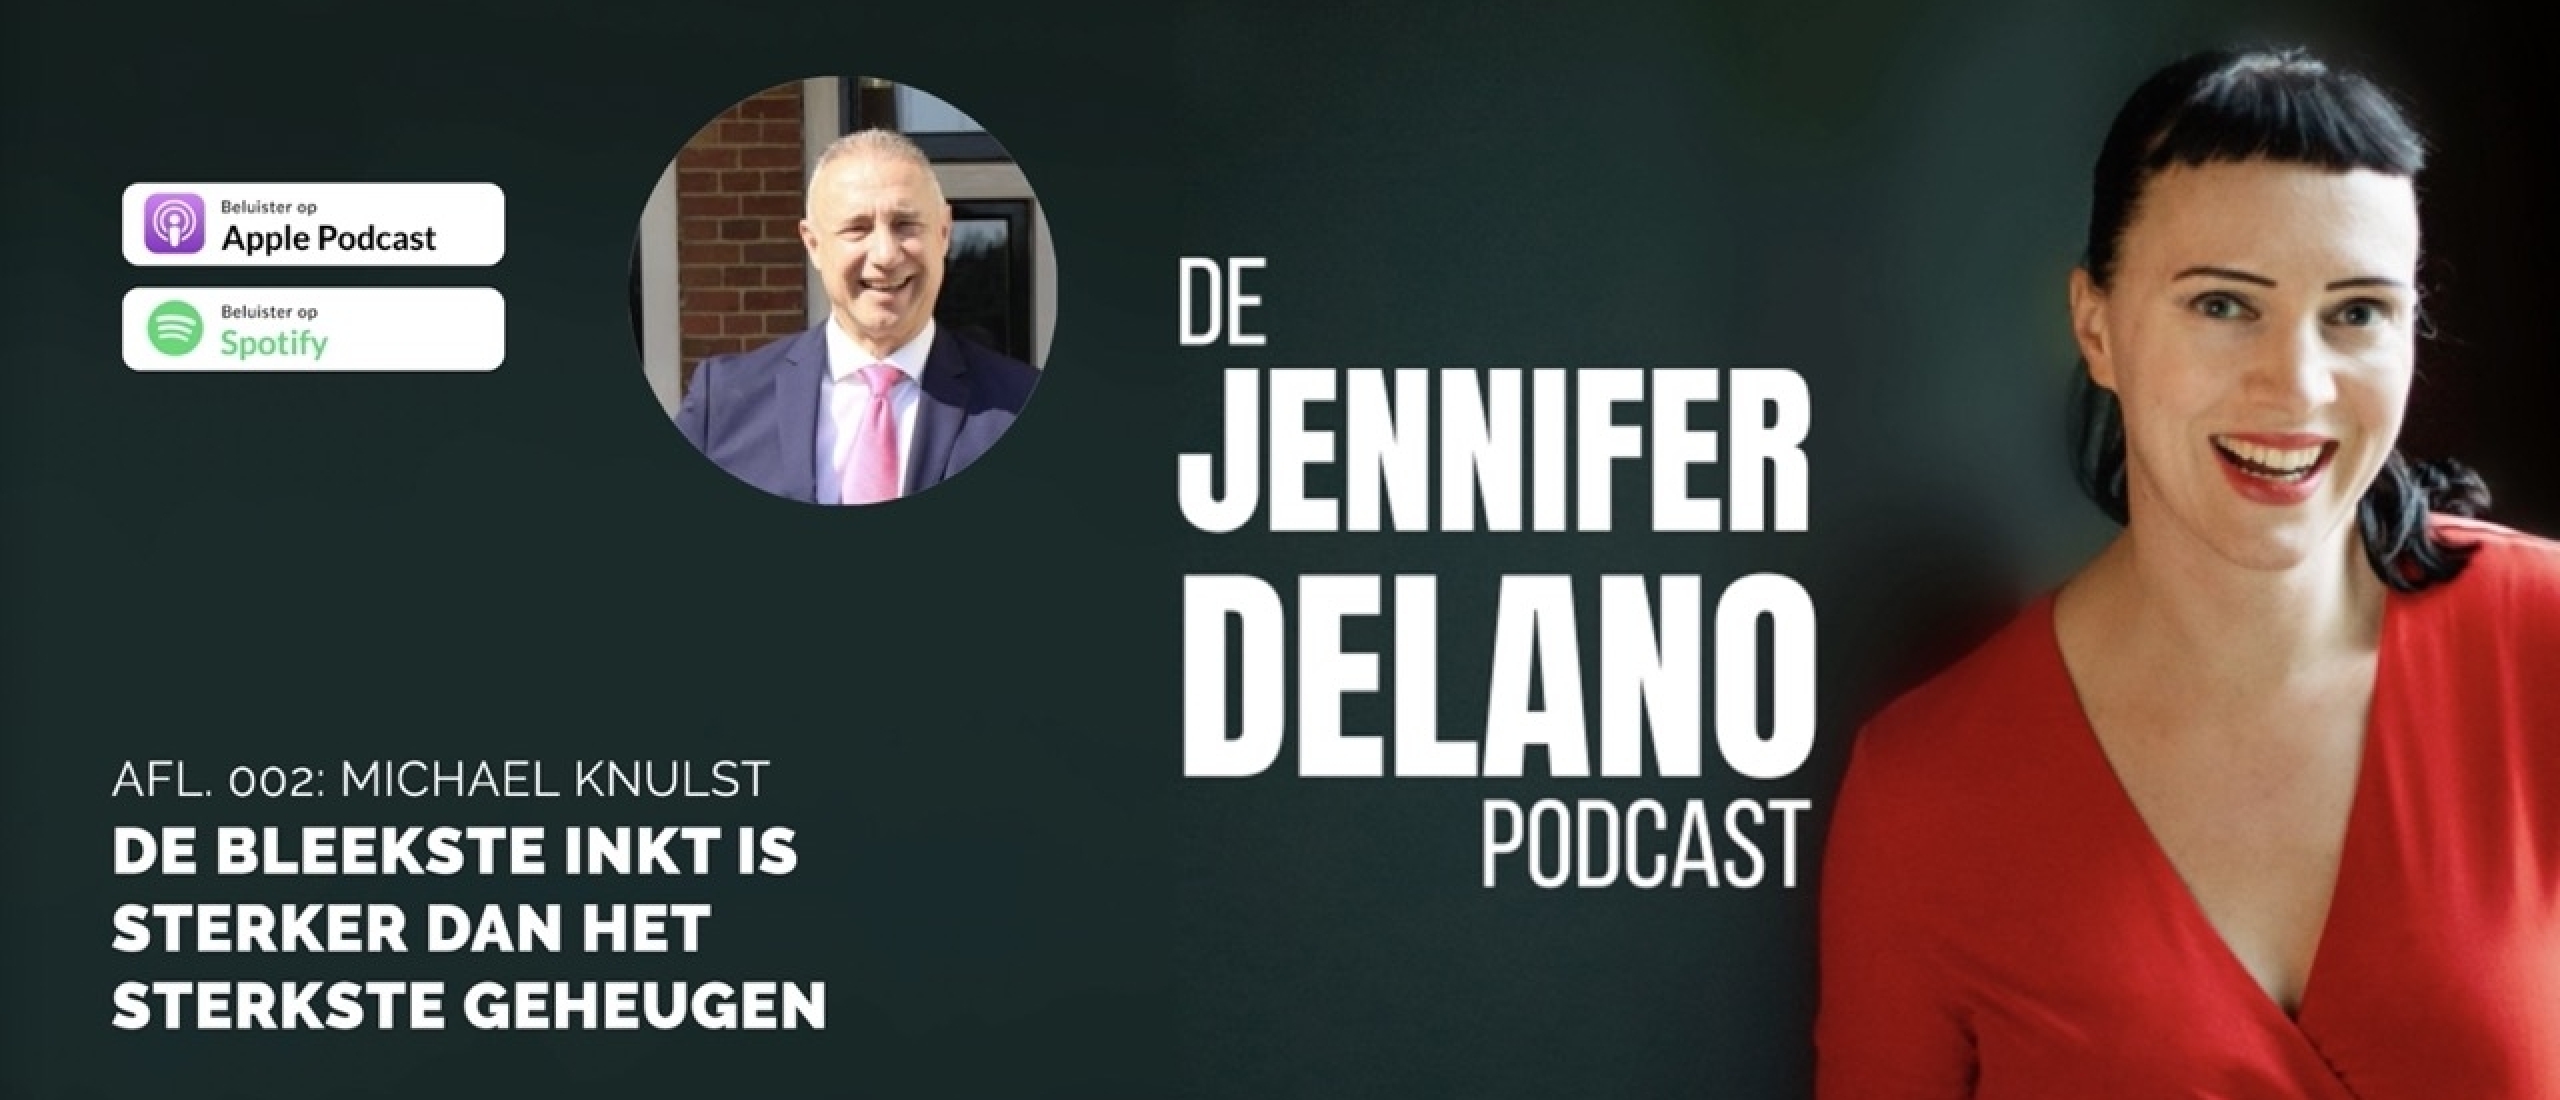 “De bleekste inkt is sterker dan het sterkste geheugen” - De Jennifer Delano Podcast Afl. 002 met Michael Knulst